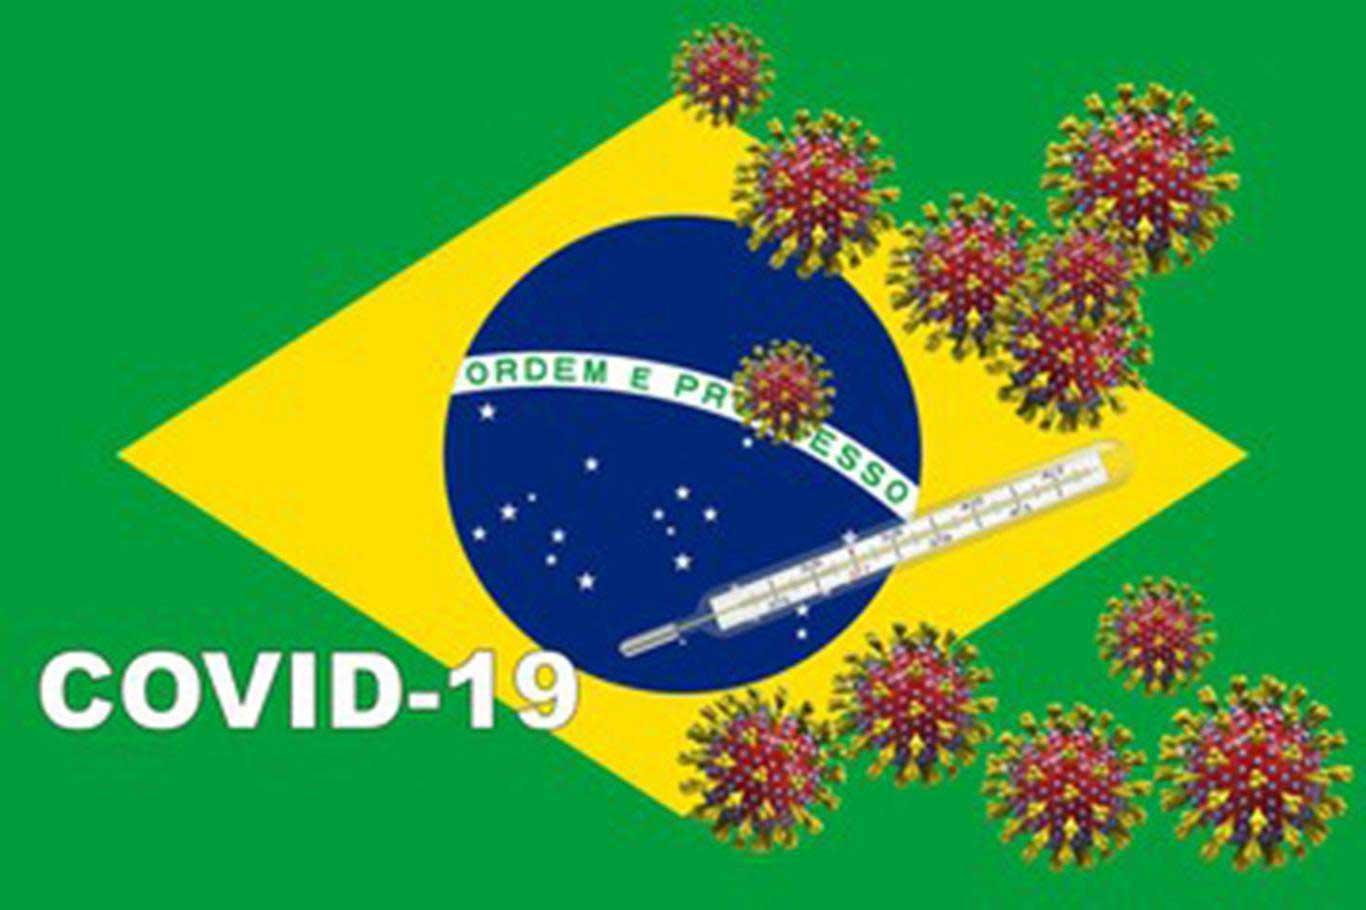 Brezilya'da Covid-19 vakası ve ölü sayısında rekor artışlar yaşanıyor